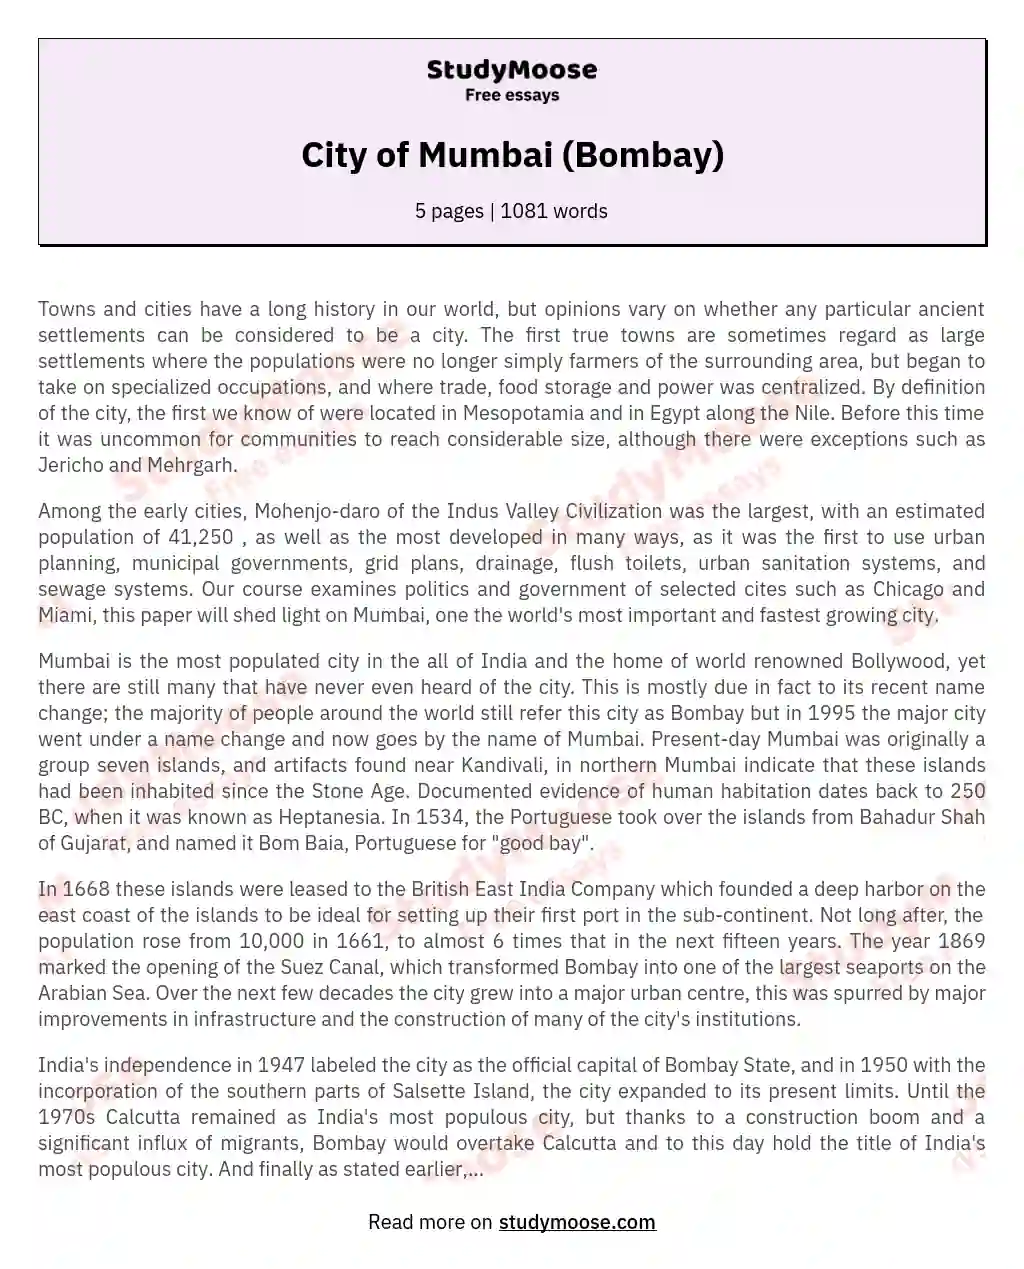 City of Mumbai (Bombay) essay